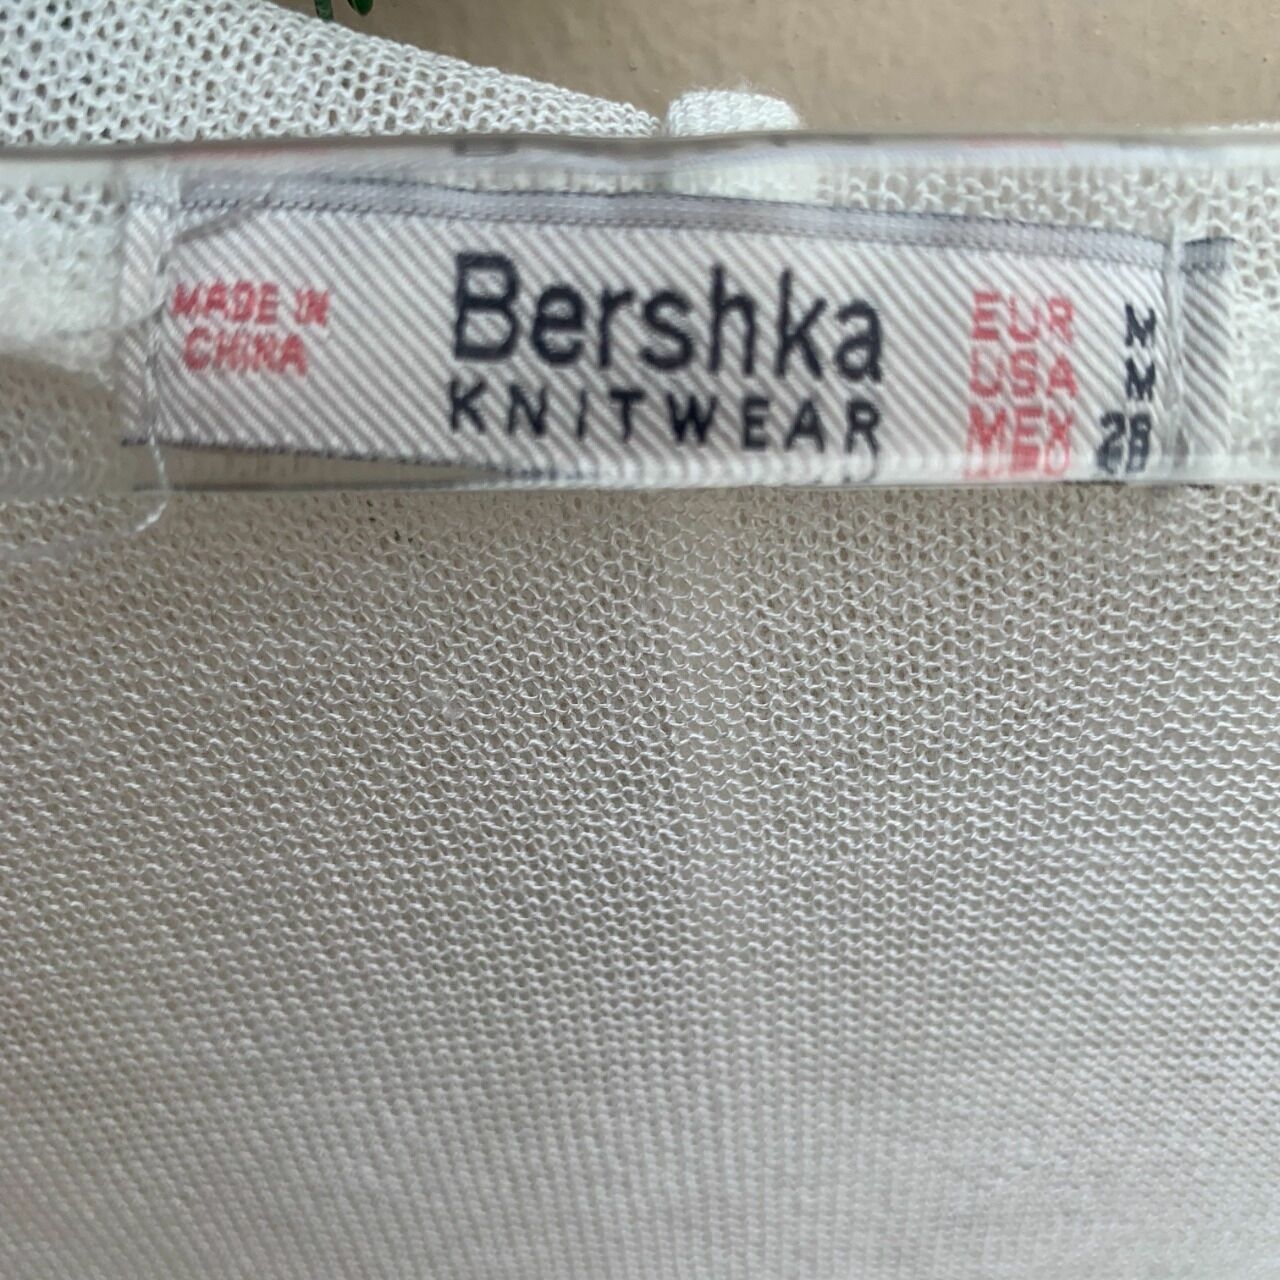 Bershka Broken White Cardigan